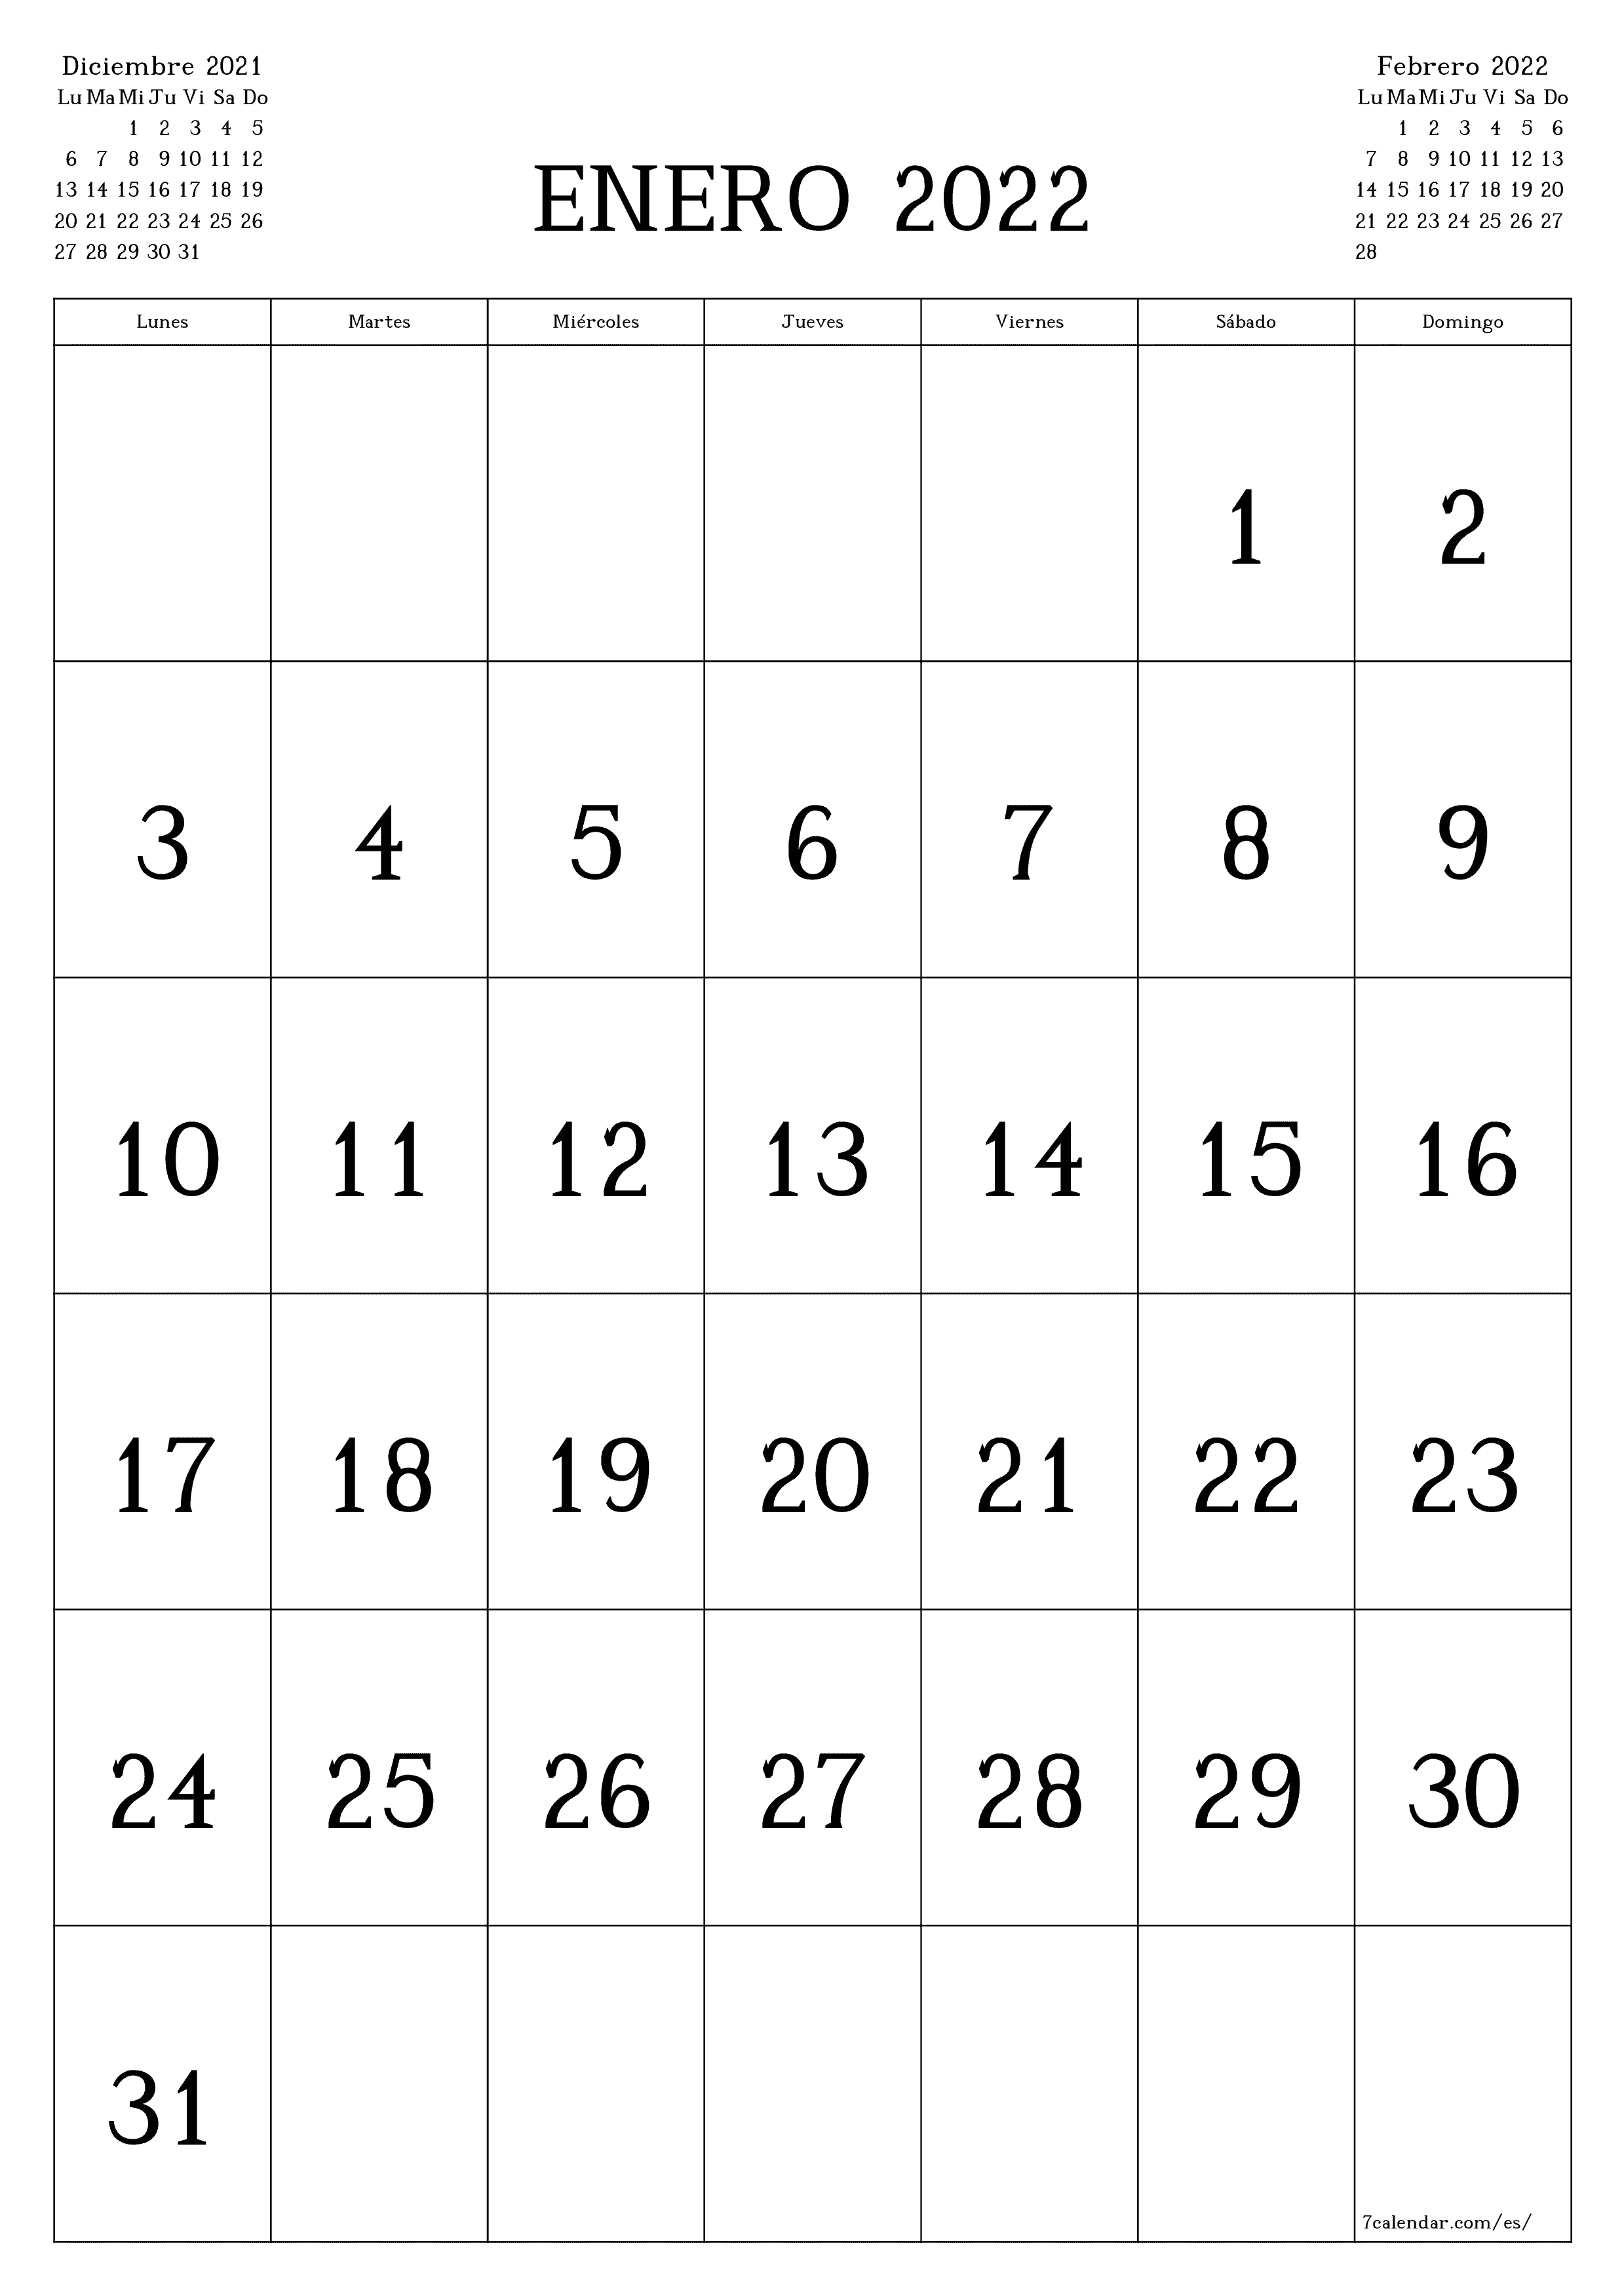 Calendario 2022 Por Mes Calendarios y planificadores imprimibles para el mes Enero 2022 A4, A3 a  PDF y PNG - 7calendar